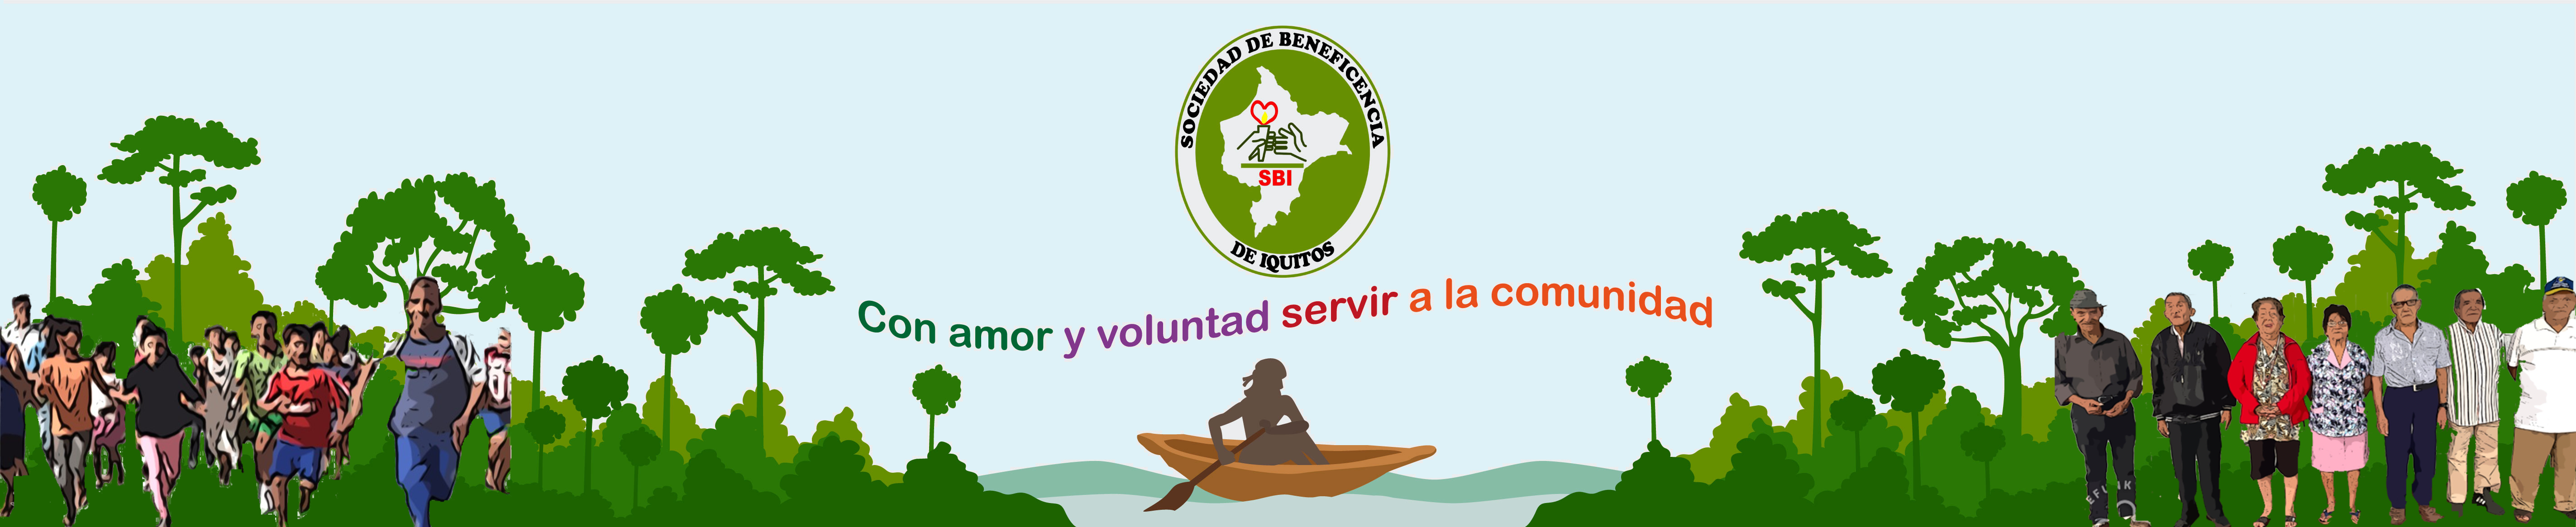 logo Beneficencia Iquitos